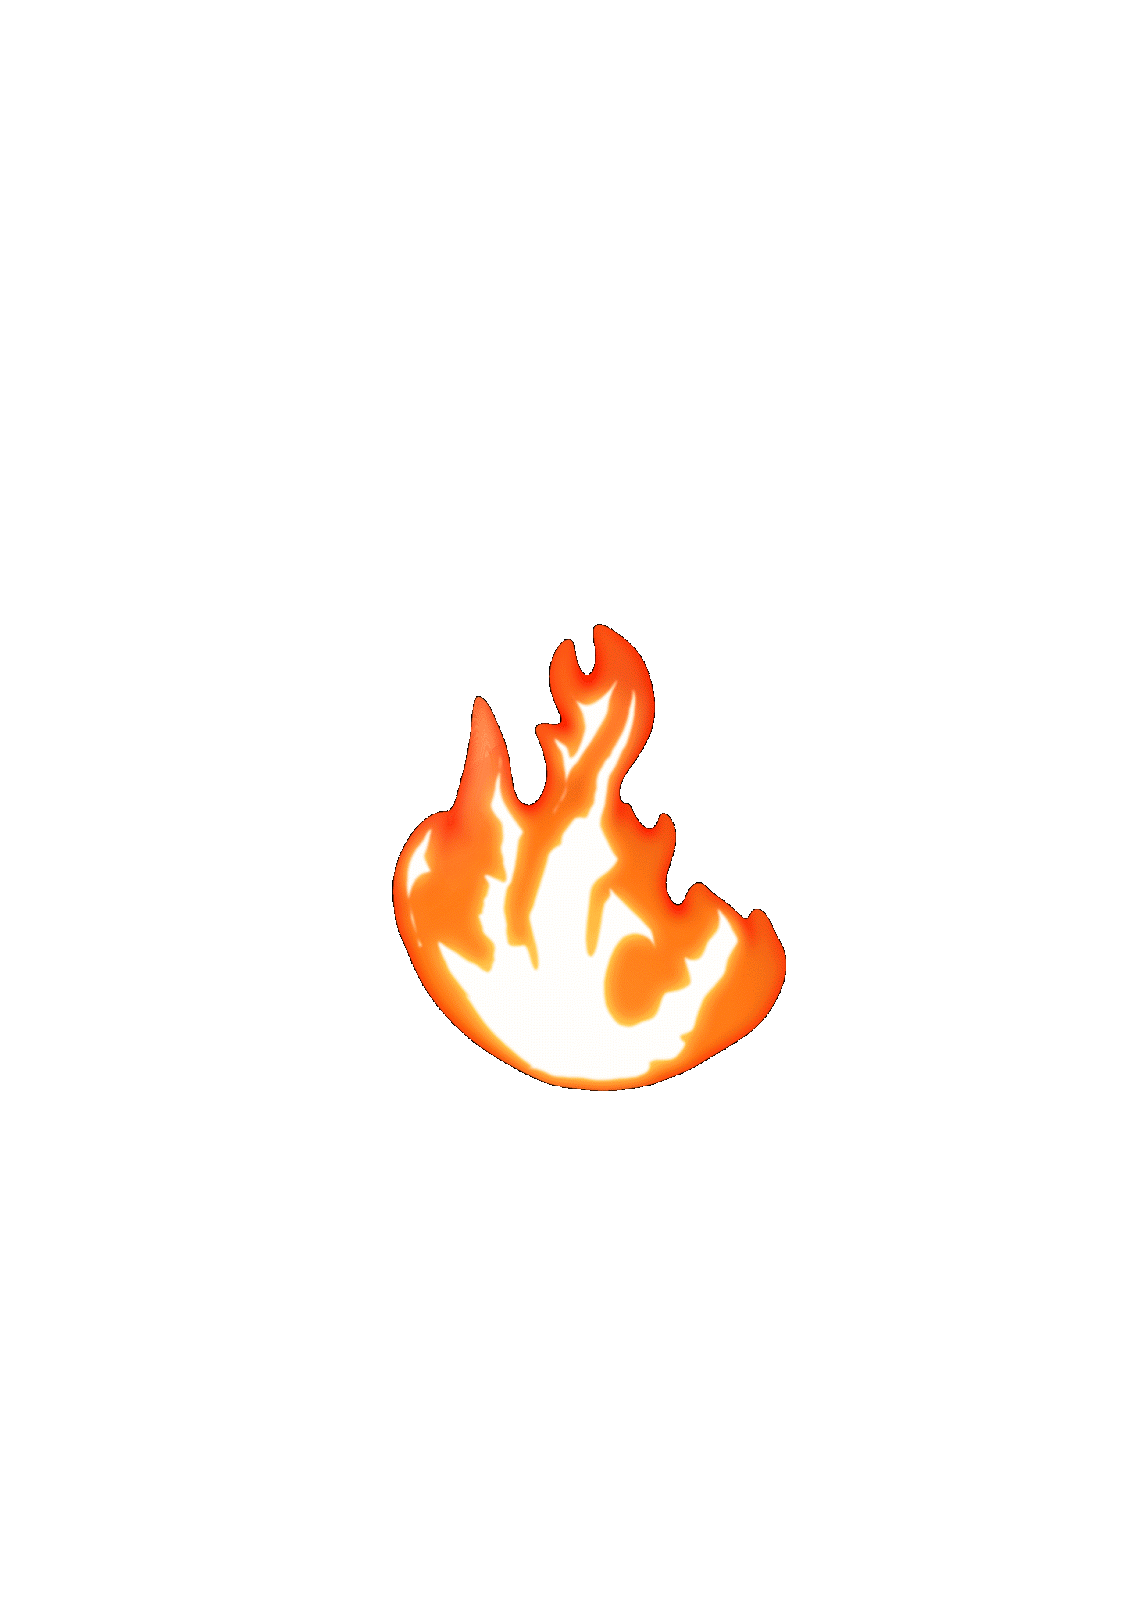 Fogo em gifs. 120 imagens de chamas animadas de graça